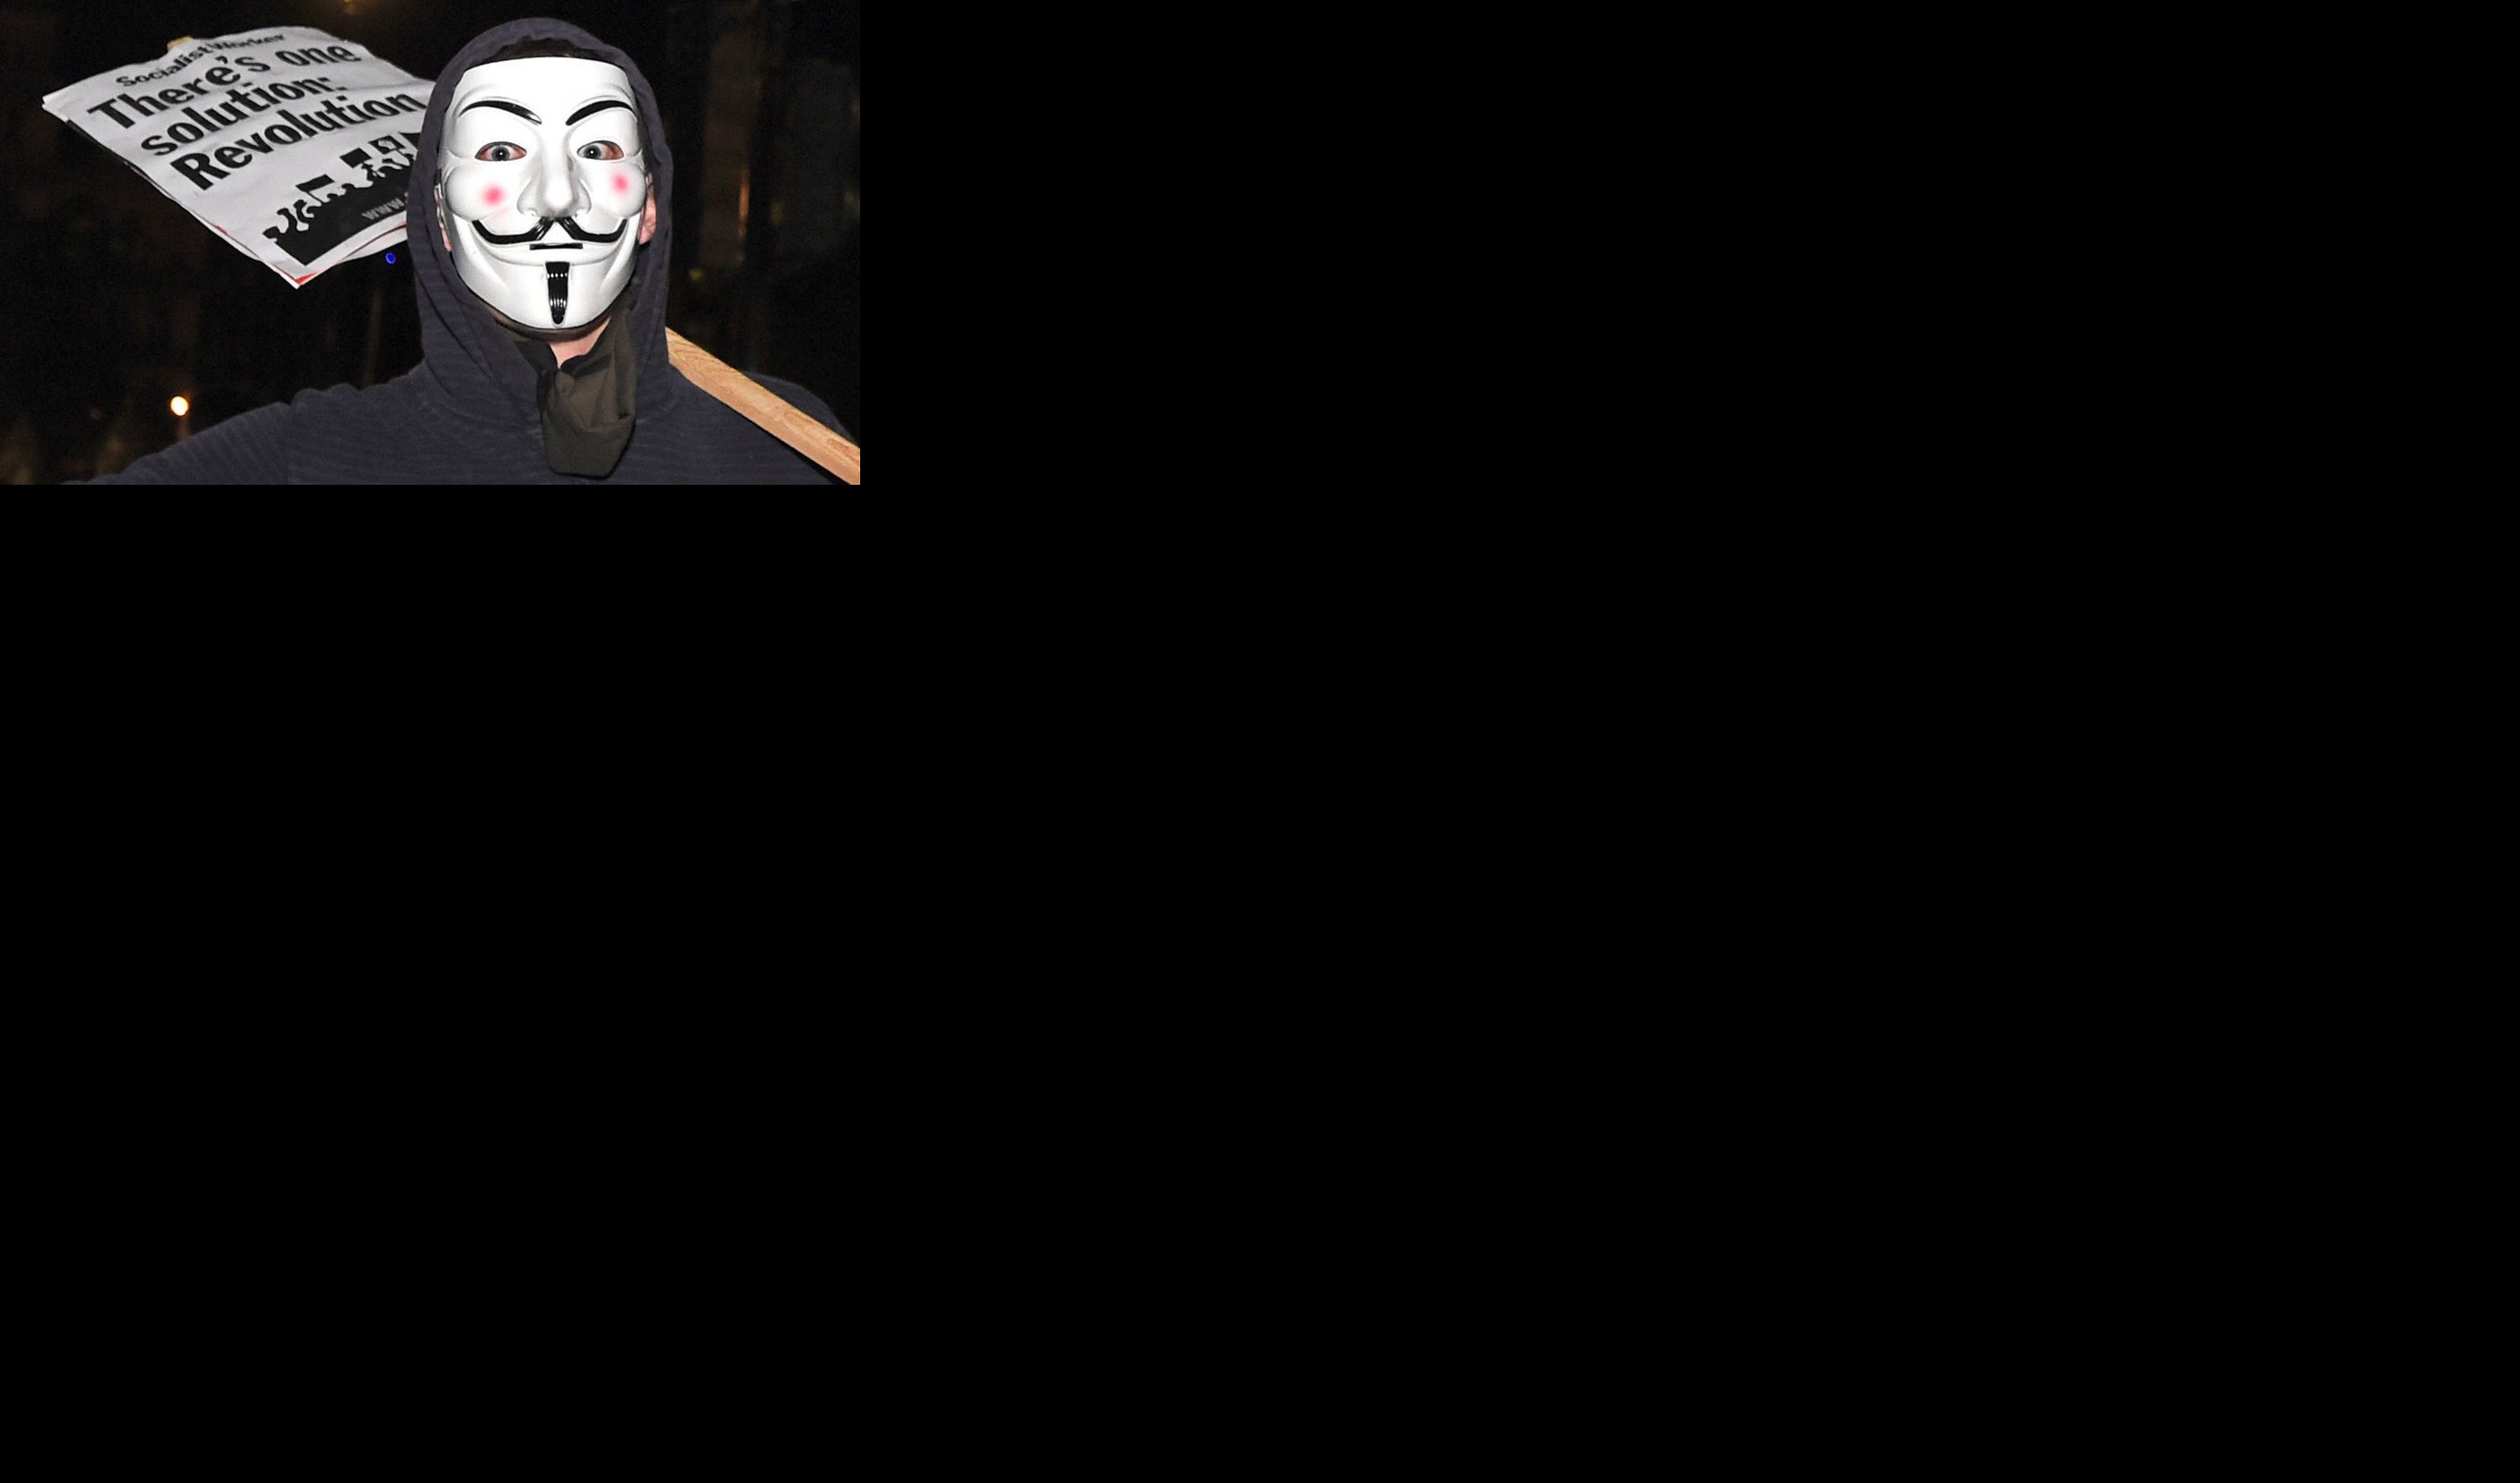 SPREMA SE NEZAPAMĆEN HAKERSKI NAPAD! "Anonimusi" spremaju osvetu britanskoj vladi ZBOG HAPŠENJA ASANŽA!